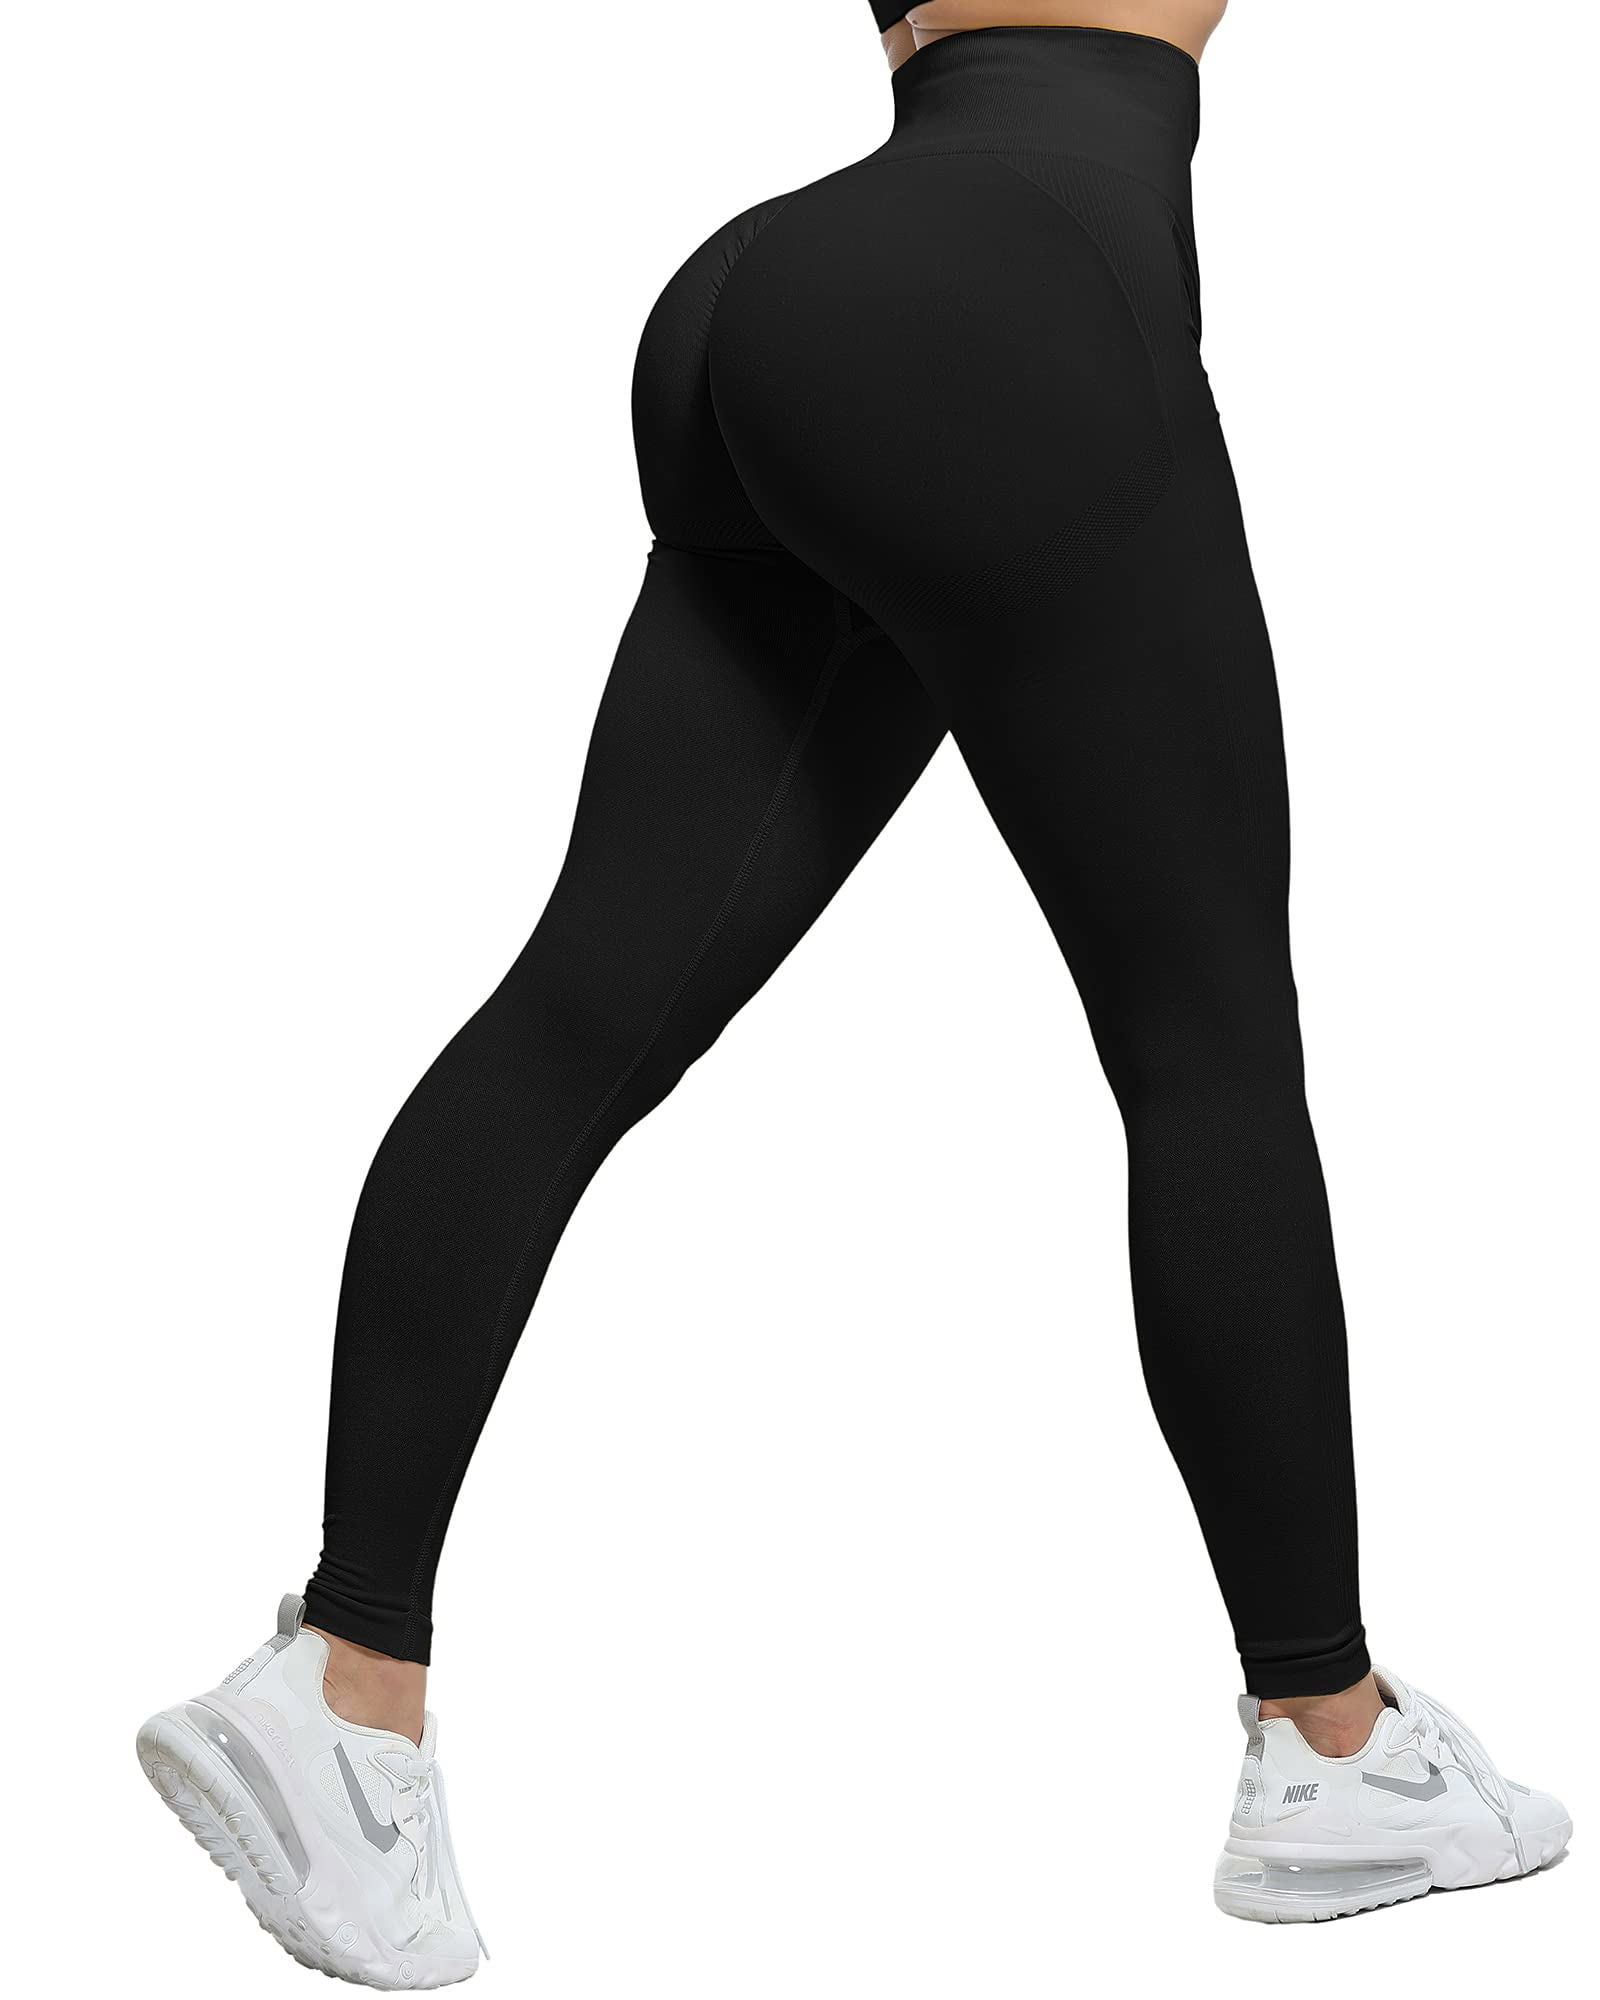 Ilfioreemio Butt Lifting Workout Leggings for Women, Scrunch Butt Gym ...